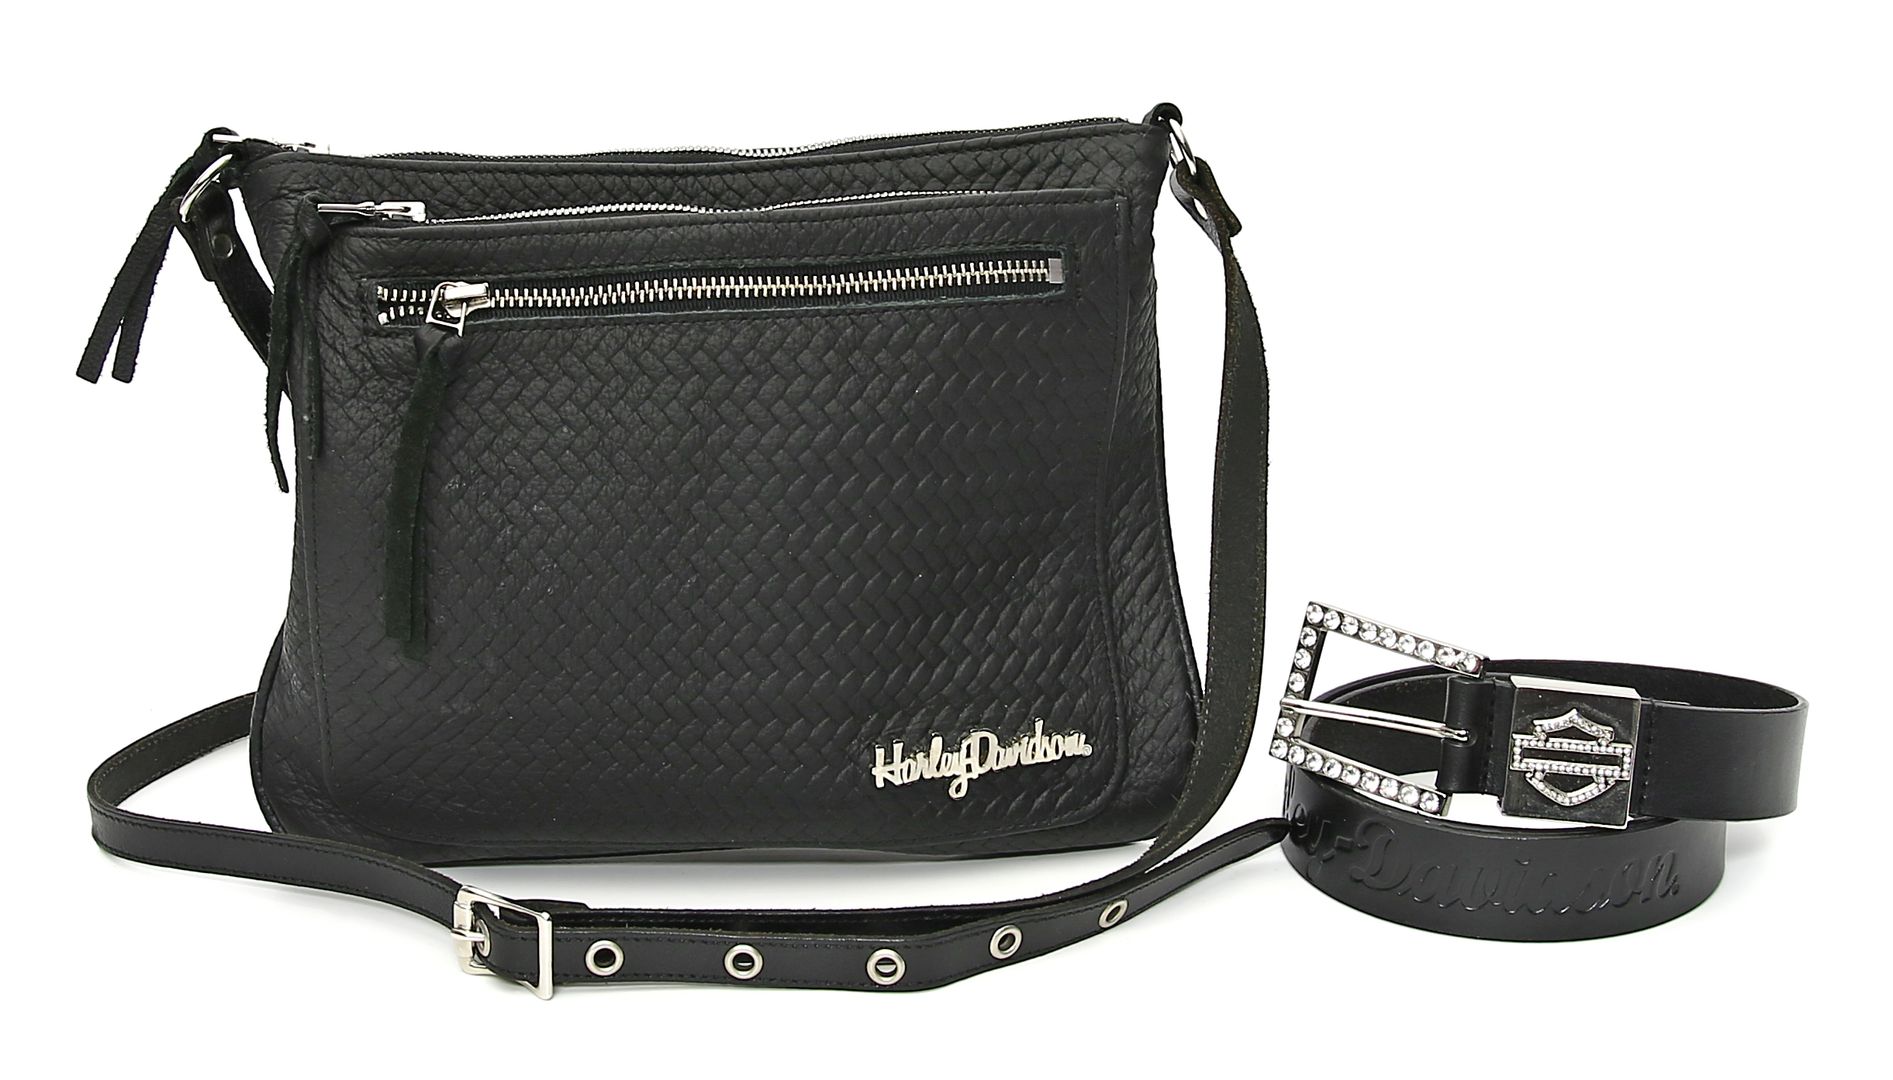 Damenhandtasche und -gürtel, "Harley Davidson".